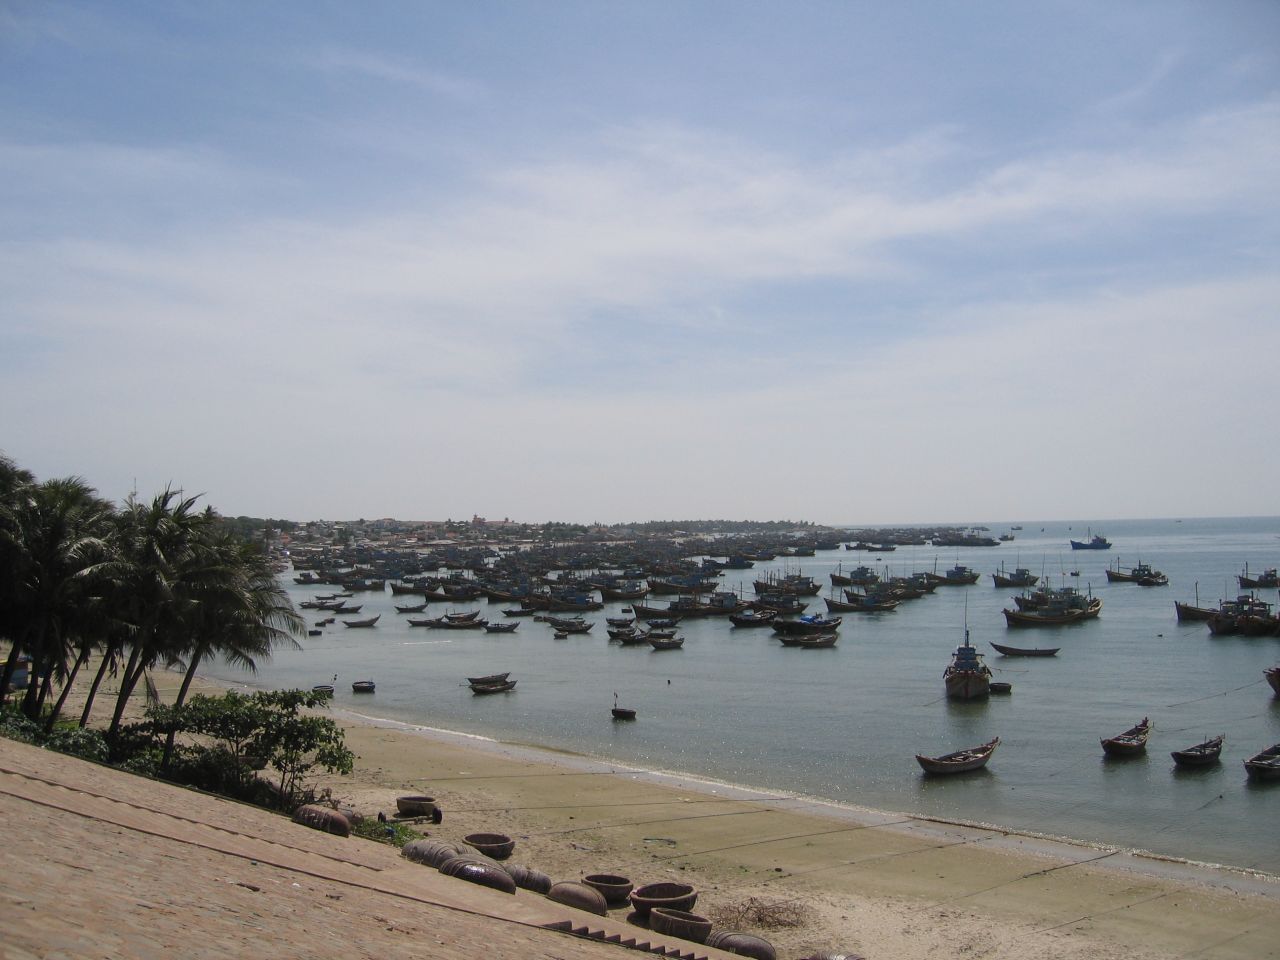 Boats docked at Mui Ne beach.